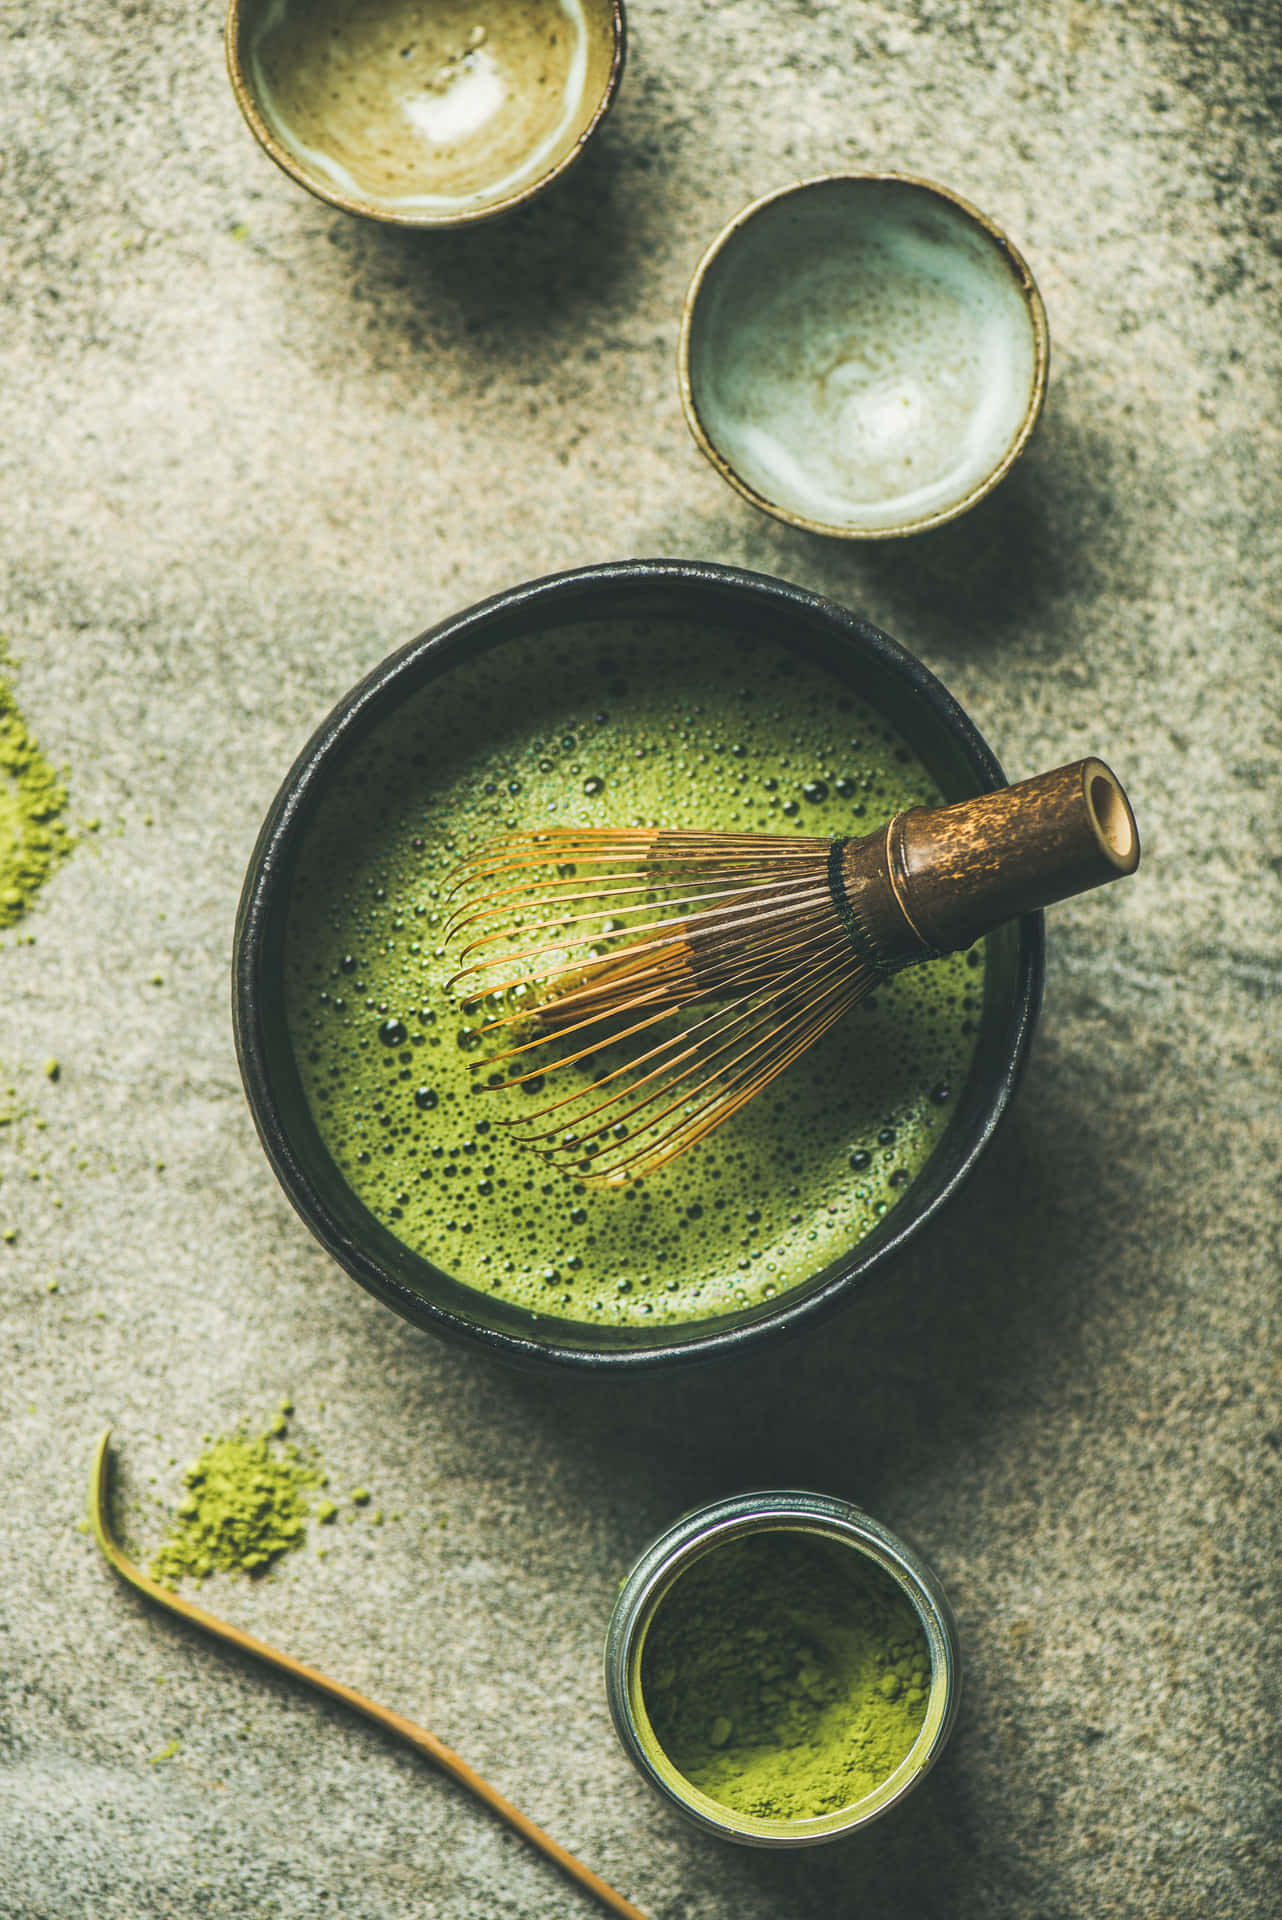 Enjoy this unique Matcha green tea flavor Wallpaper